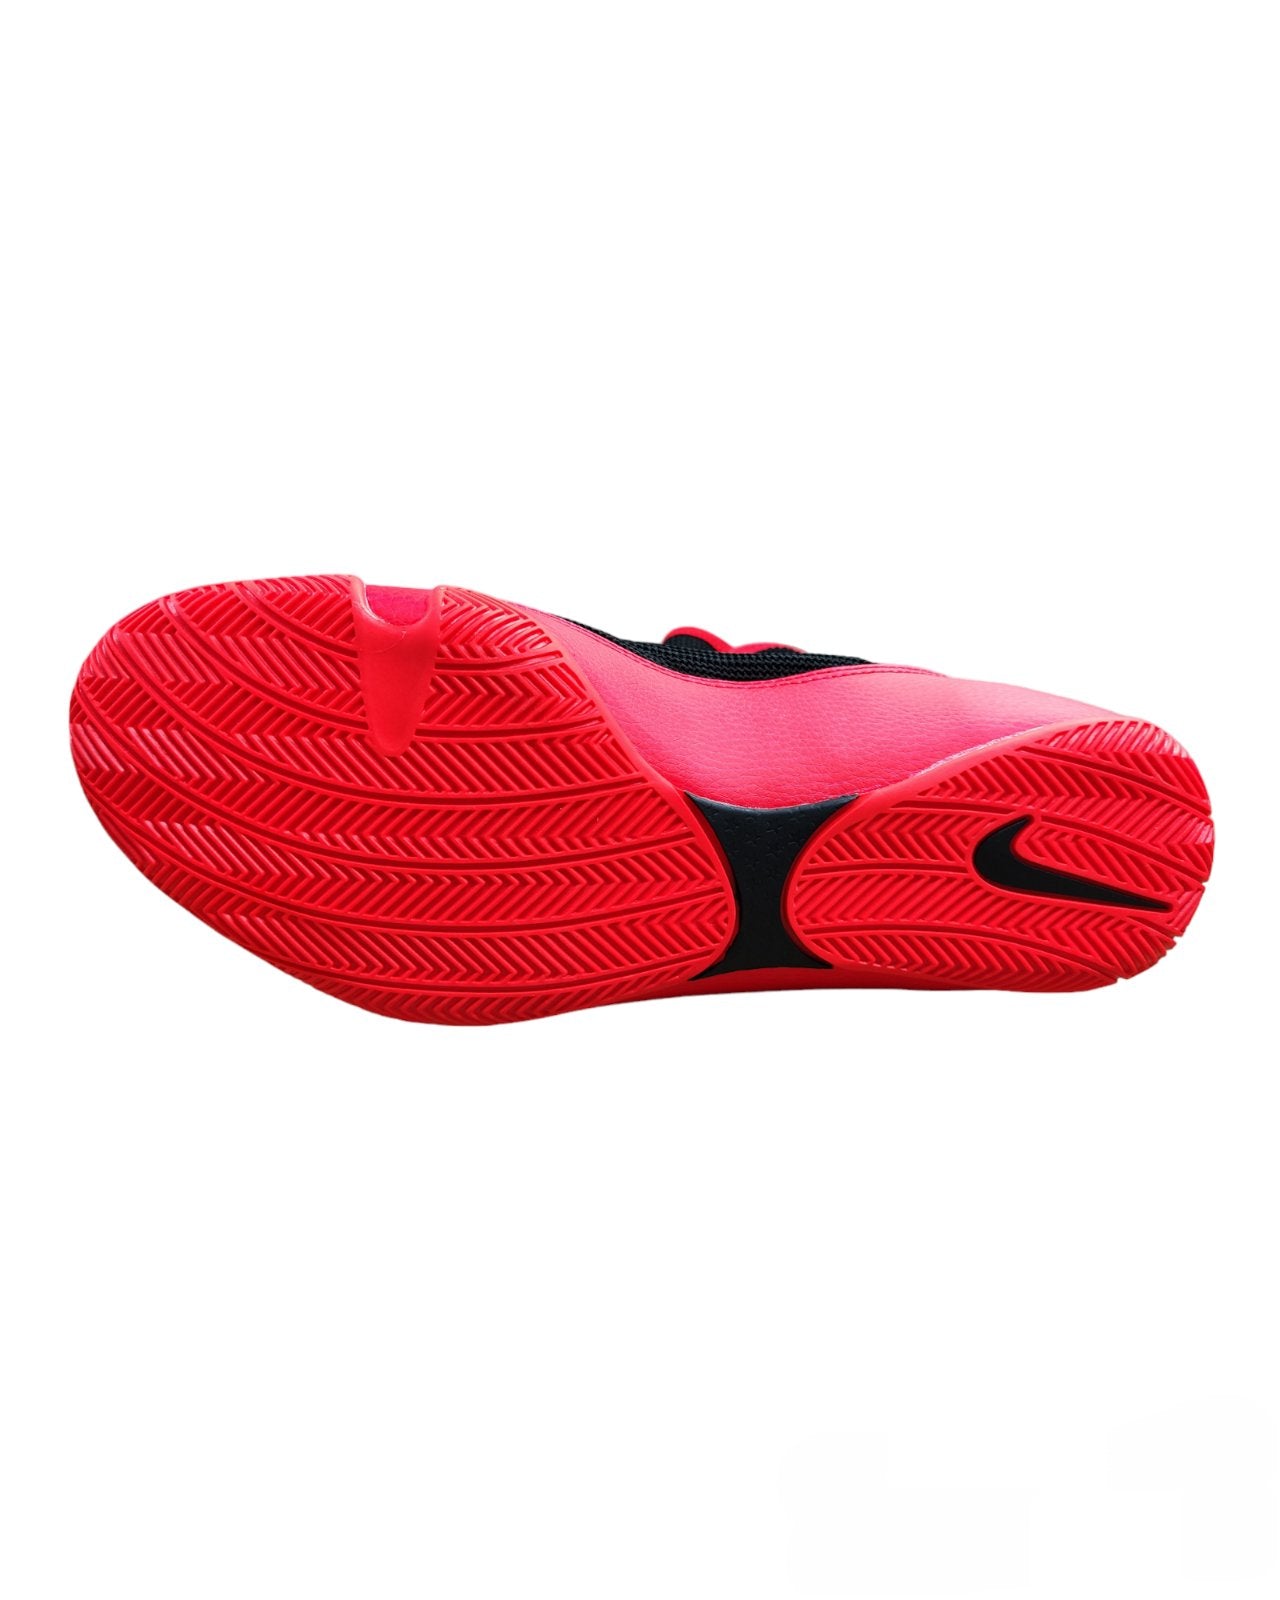 Nike Machomai 2 Boxing Shoes [Black/Bright Crimson]